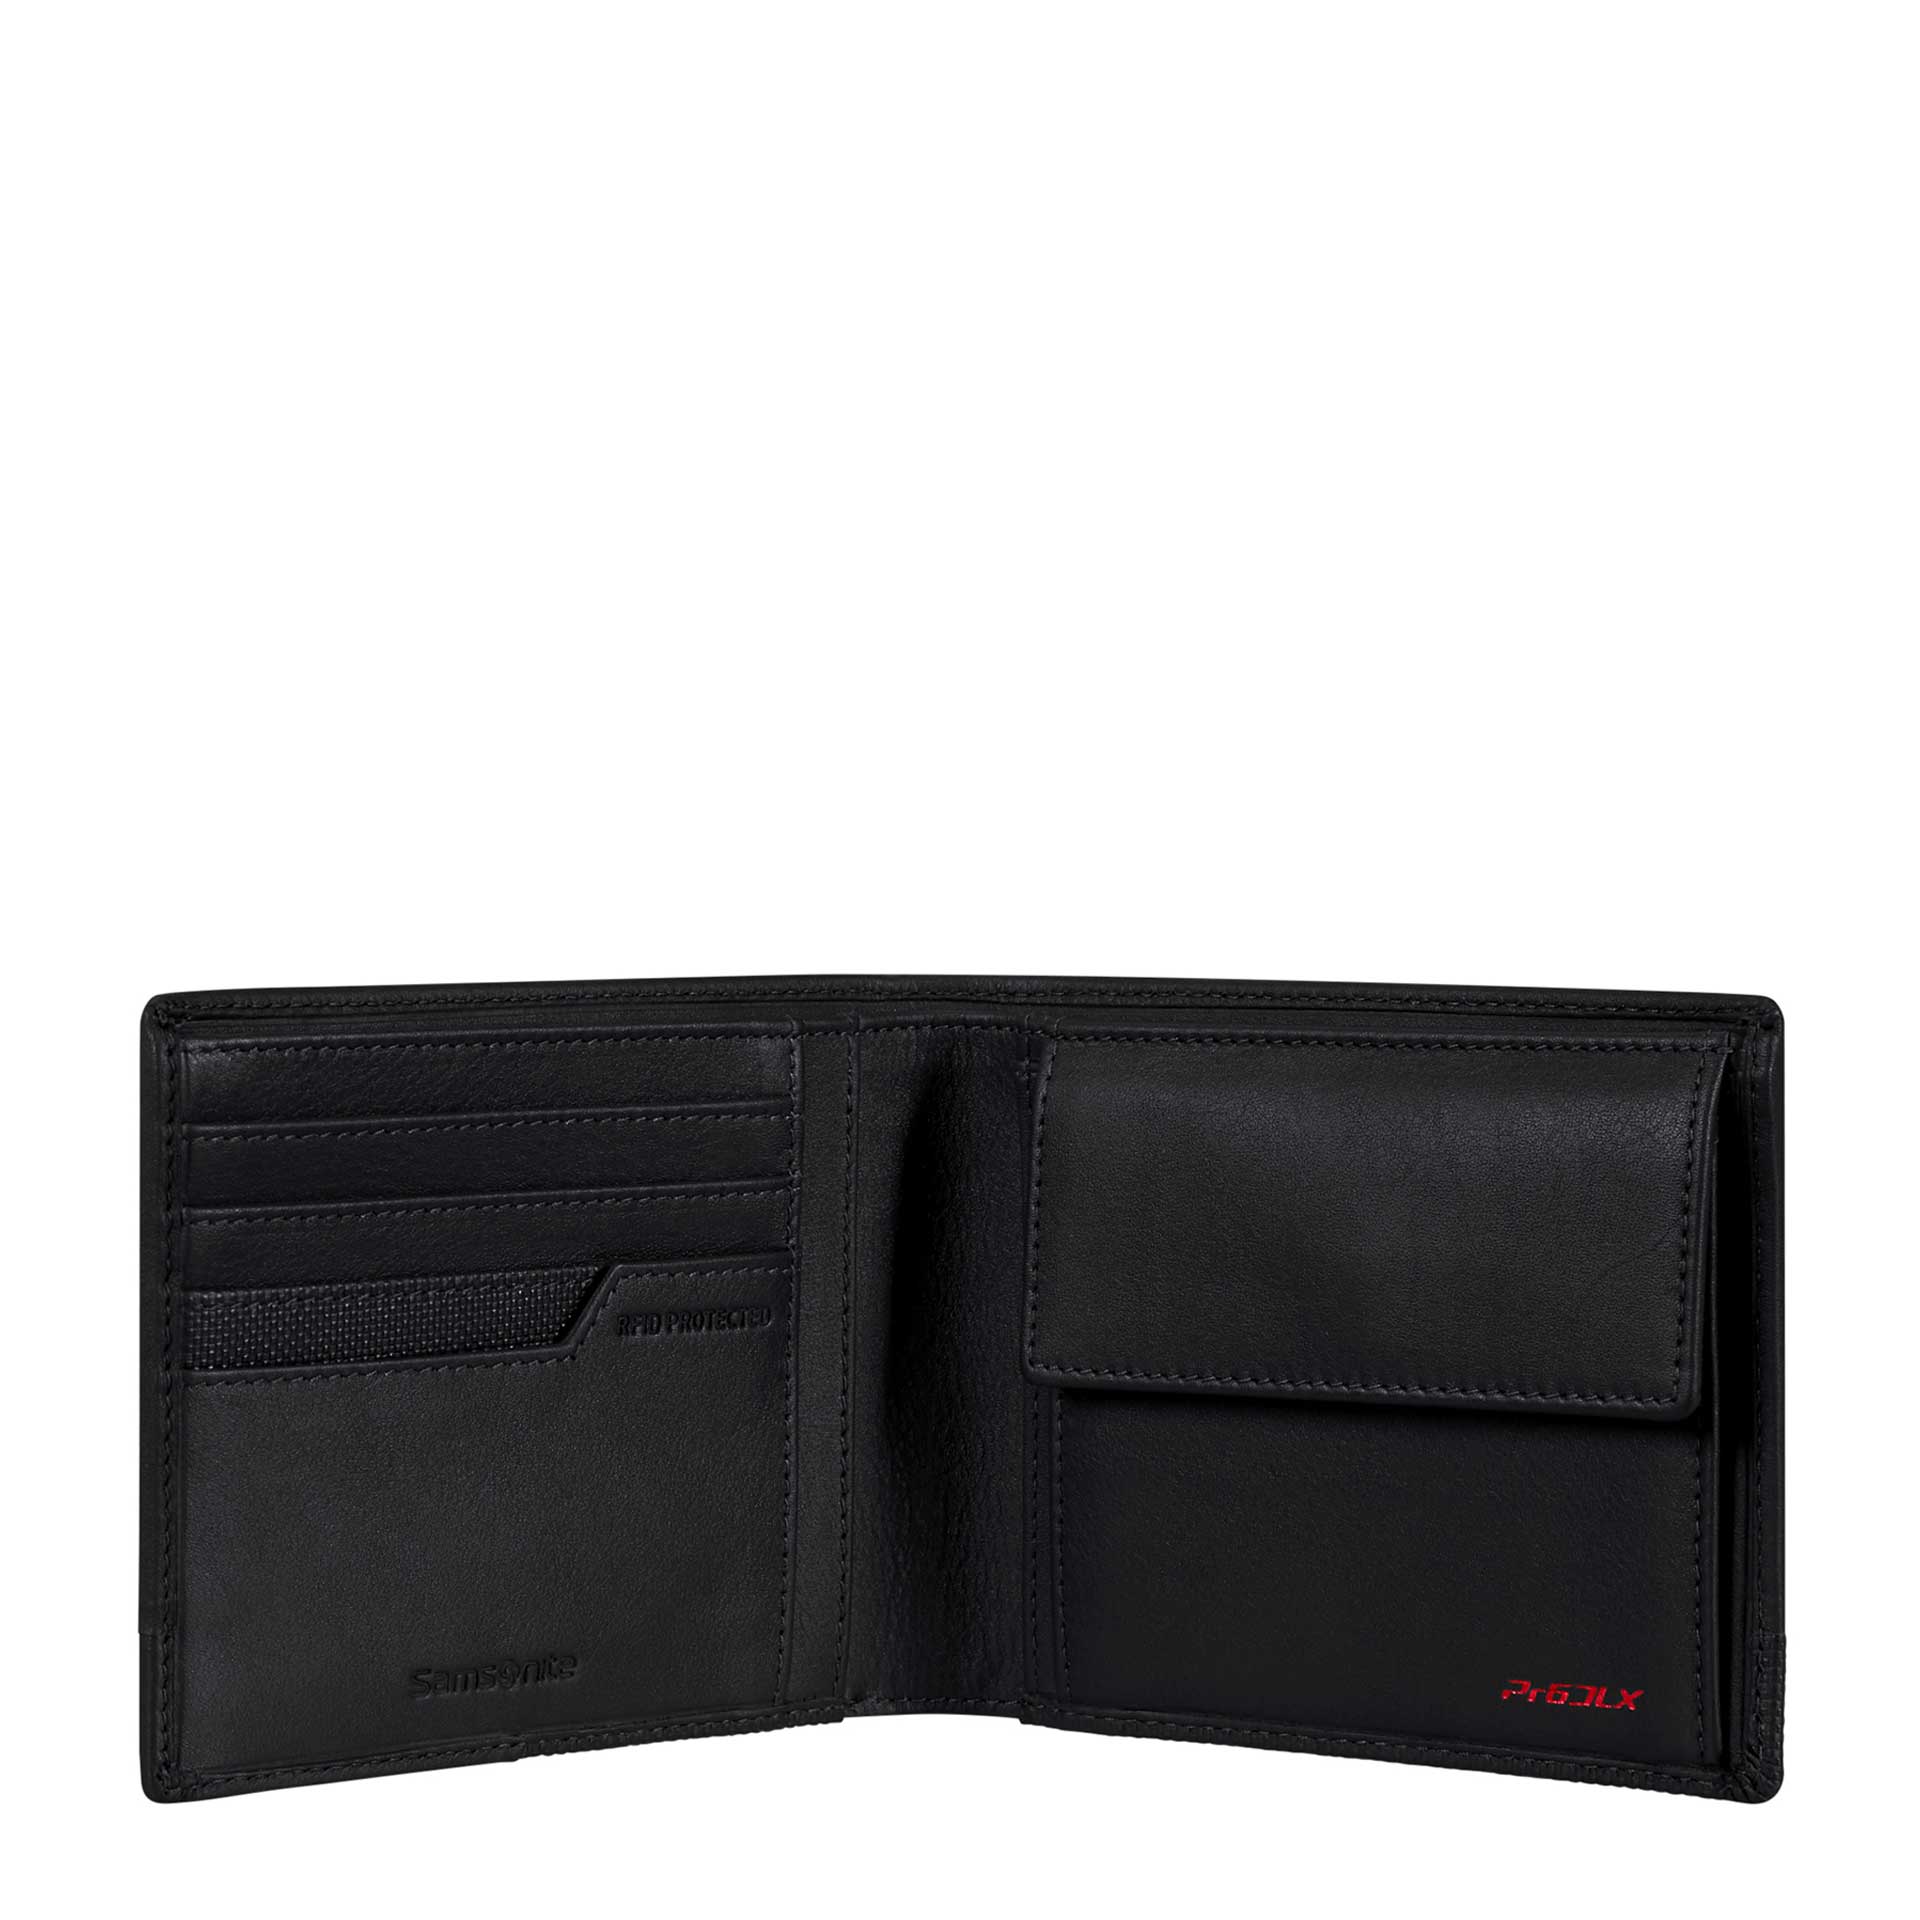 Samsonite Pro-DLX 6 SLG Herren Geldbörse RFID mit 
4 Kreditkartenfächer black